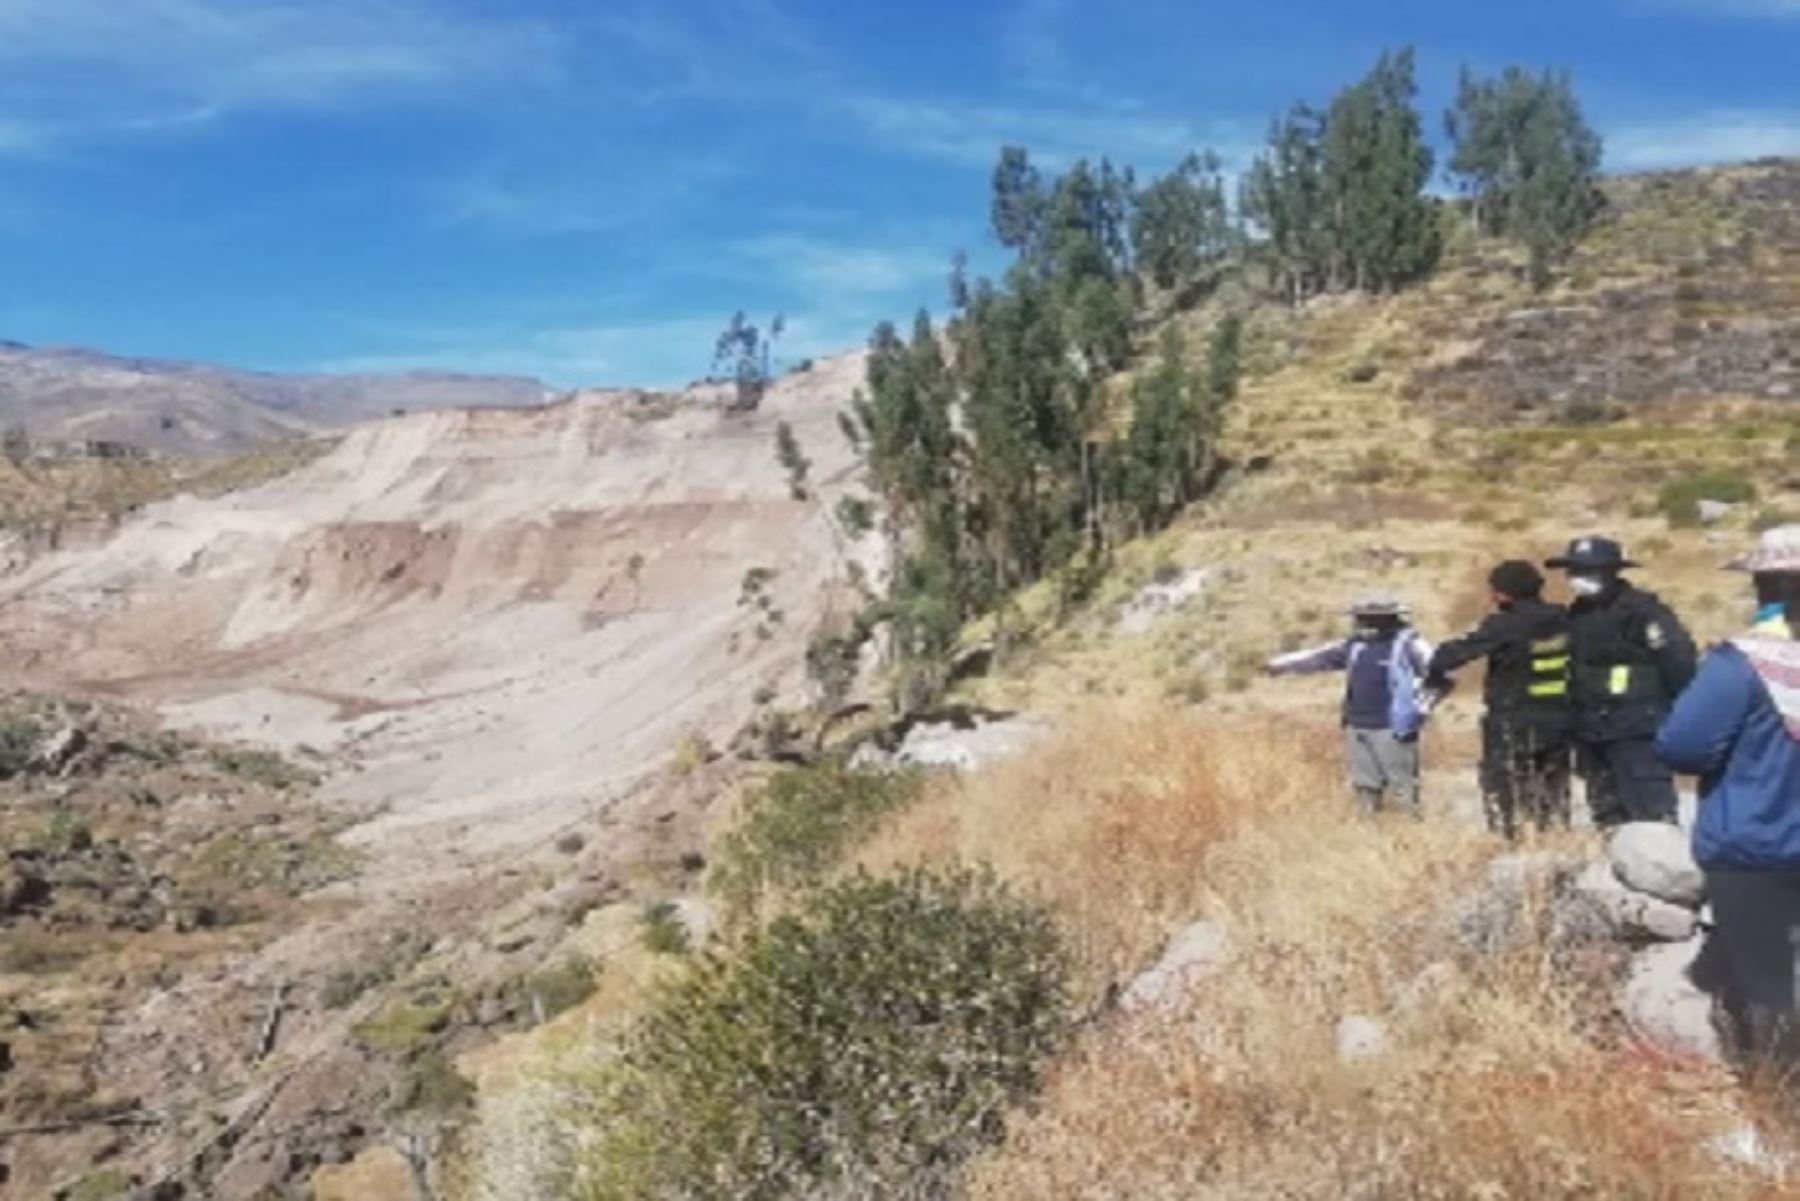 Los dos especialistas partirán desde la ciudad de Arequipa hacia el distrito de Achoma para realizar la inspección geológica correspondiente, mediante el sobrevuelo con drone y trabajos de campo.